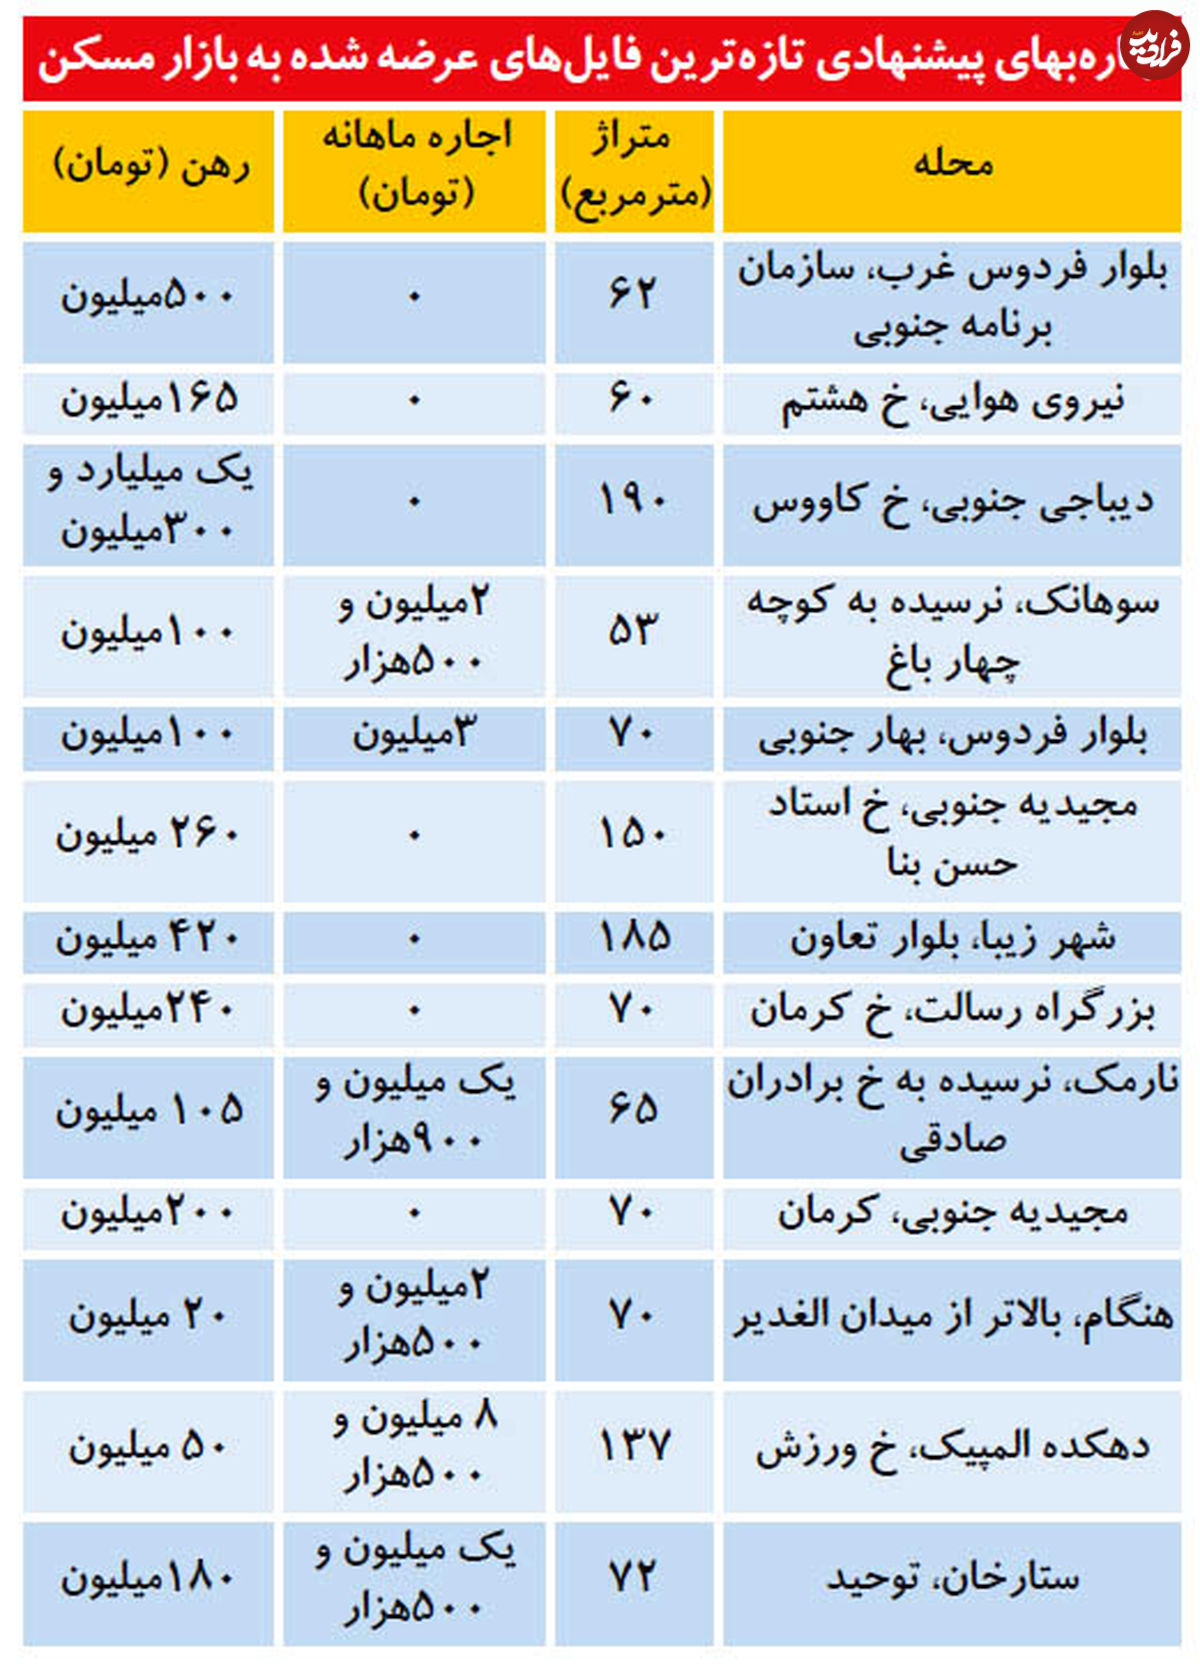 قیمت رهن و اجاره آپارتمان در مناطق مختلف تهران